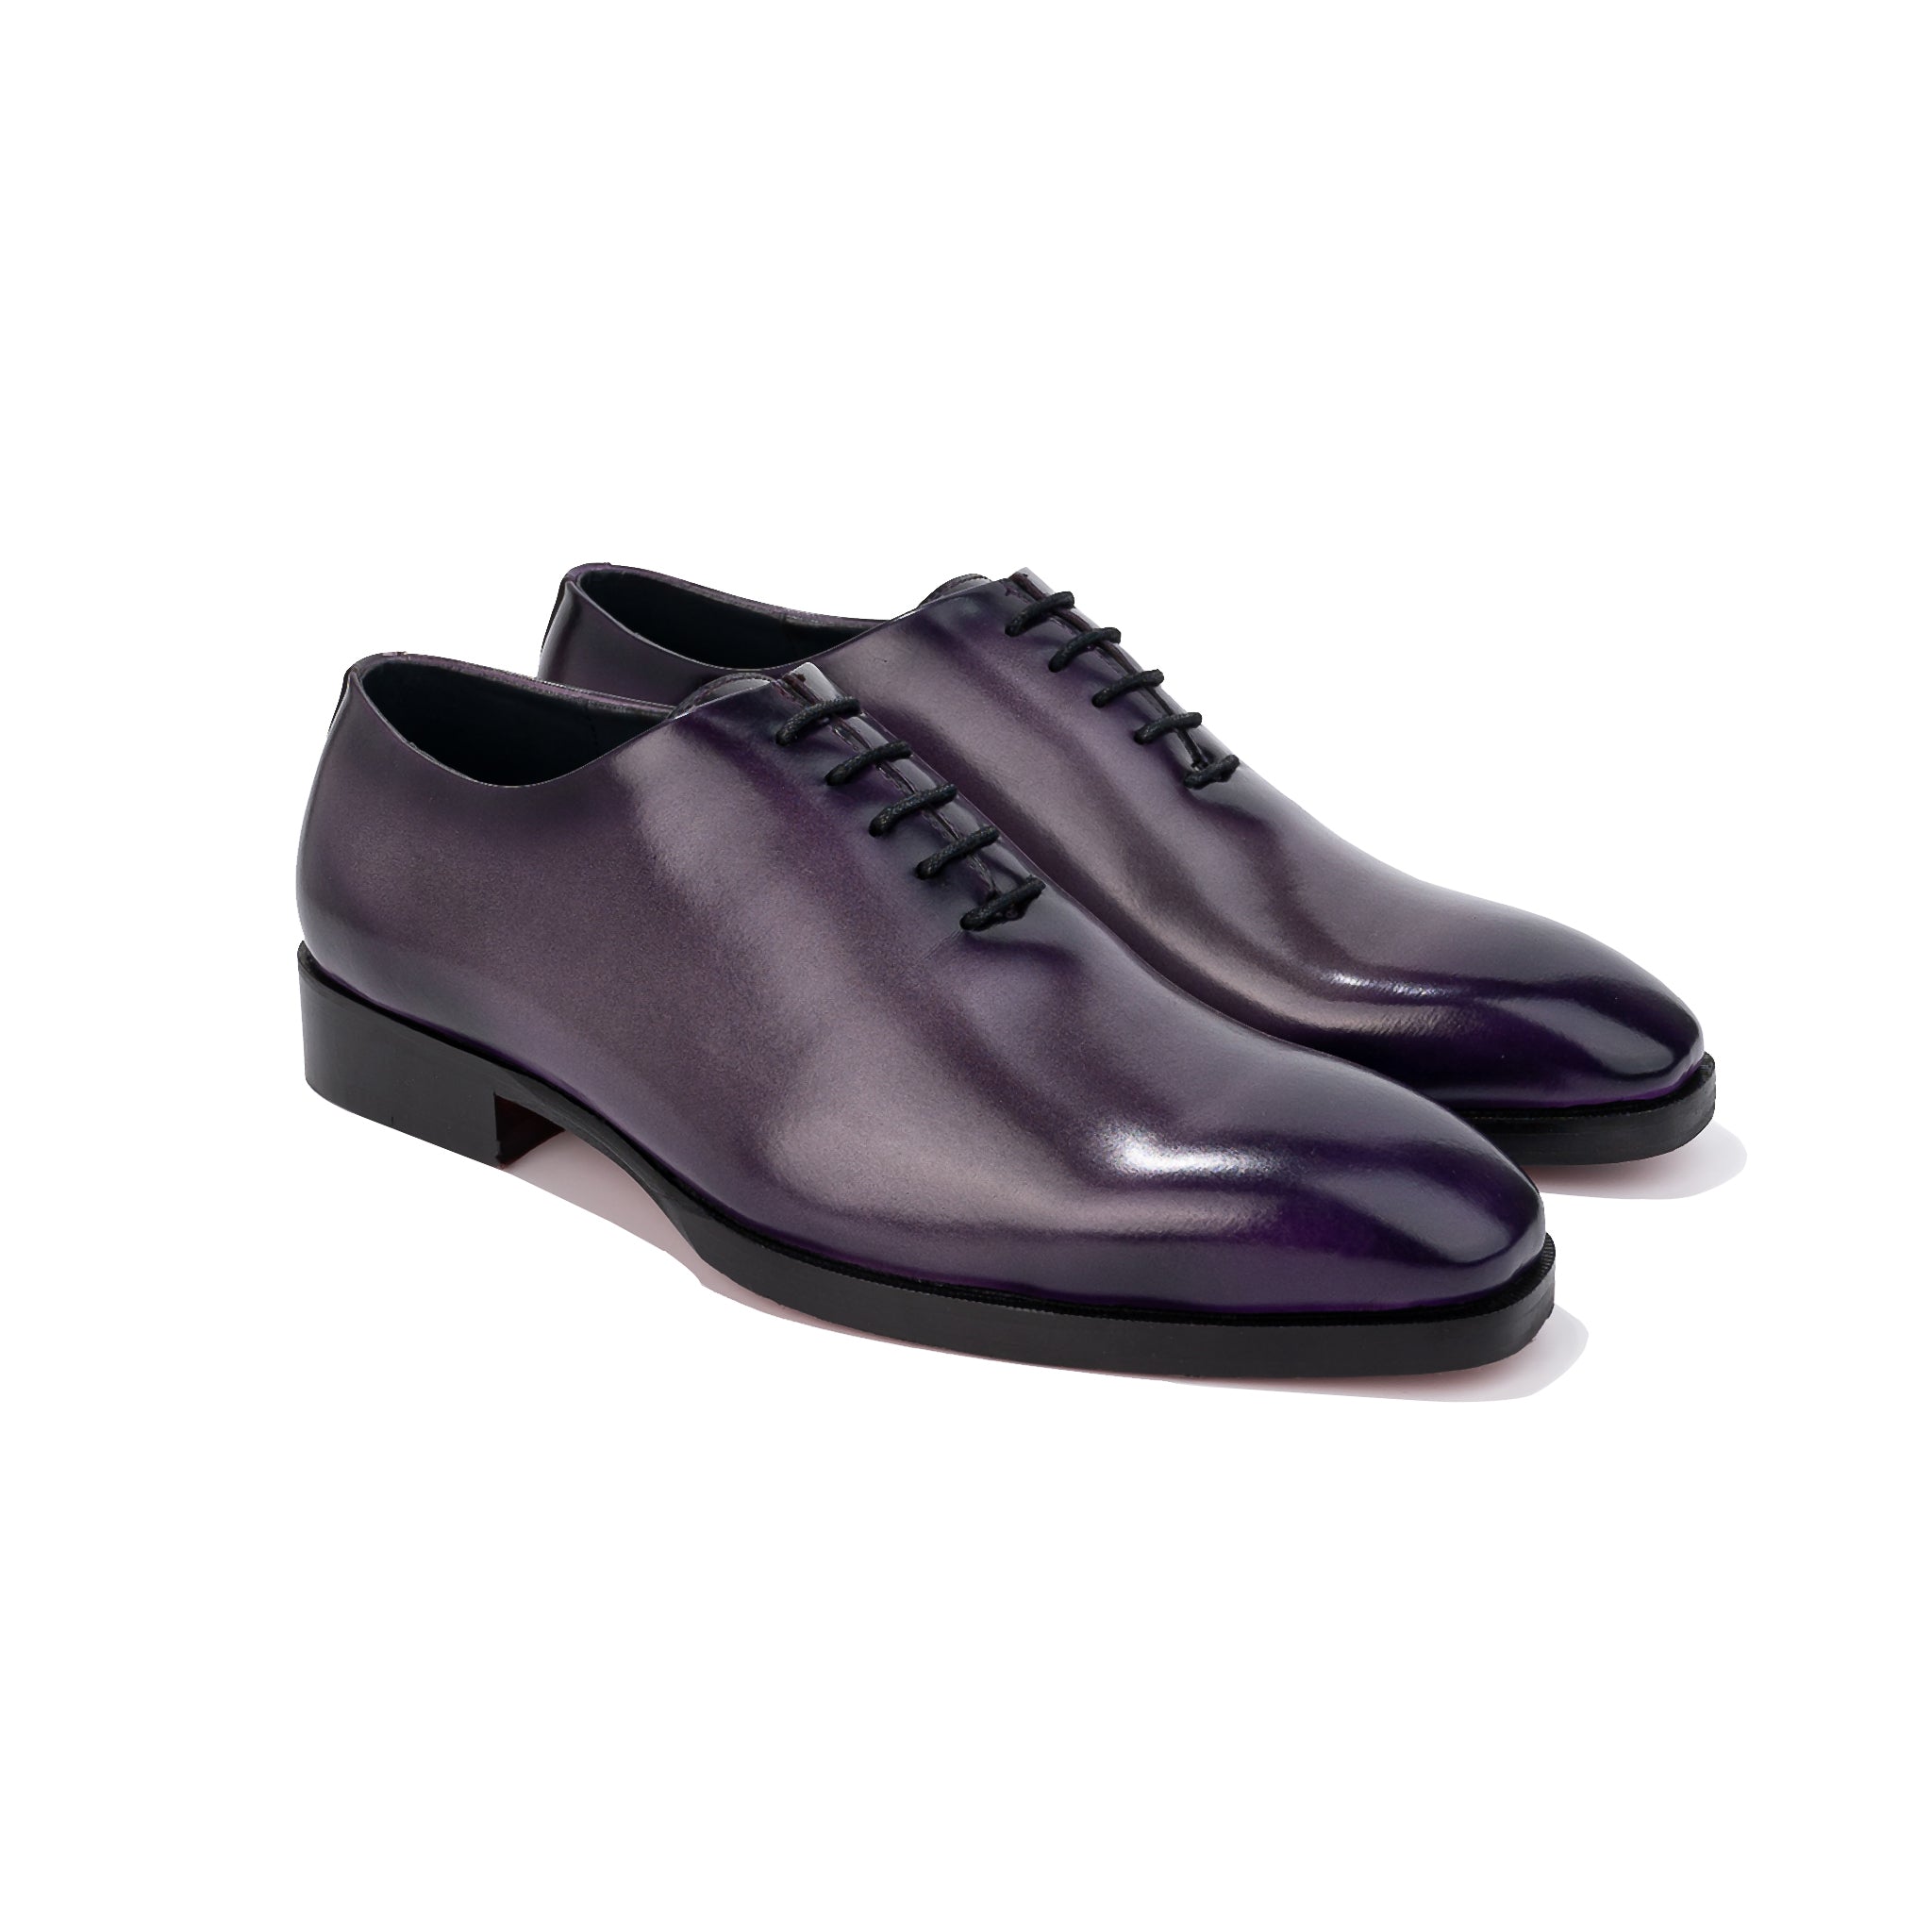 Caradonna Salvia Whole-Cut Oxford Shoes